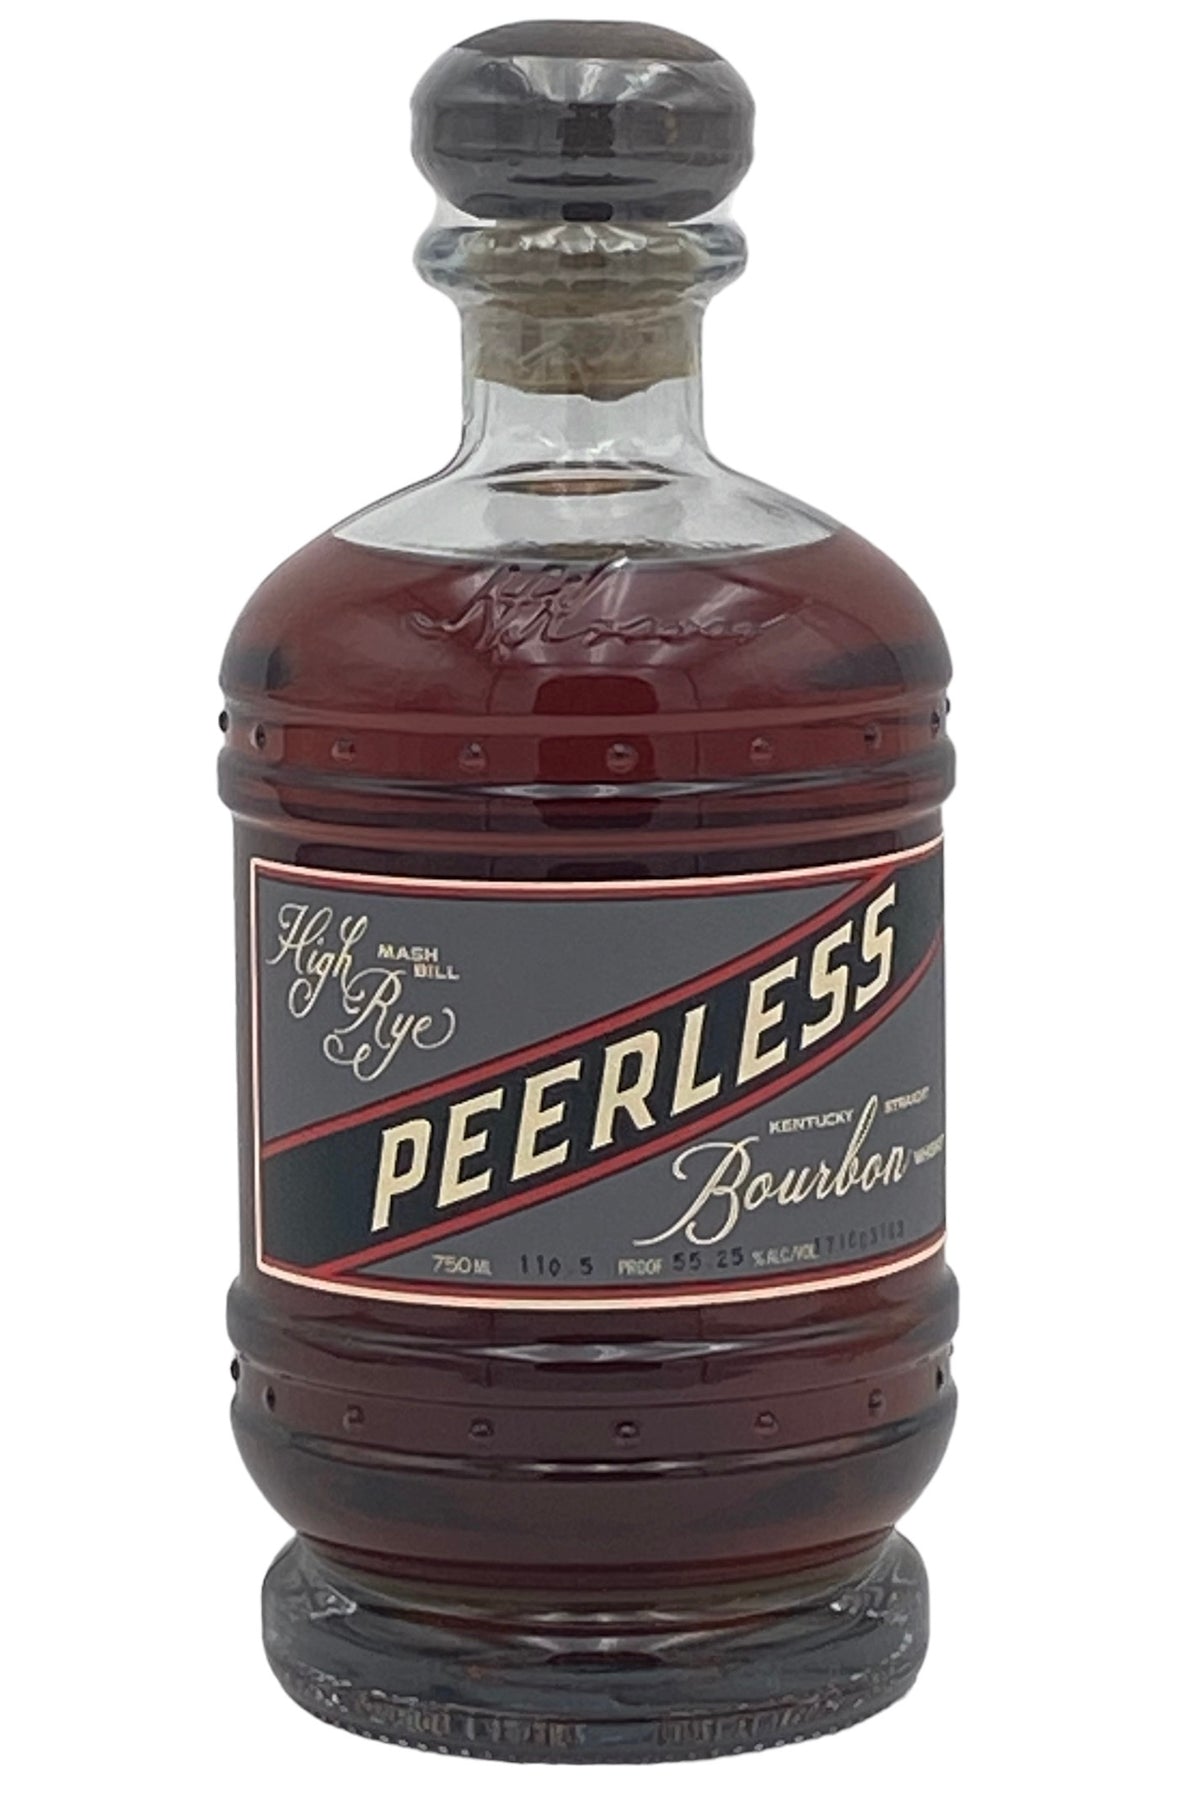 Peerless High Rye Bourbon Whiskey